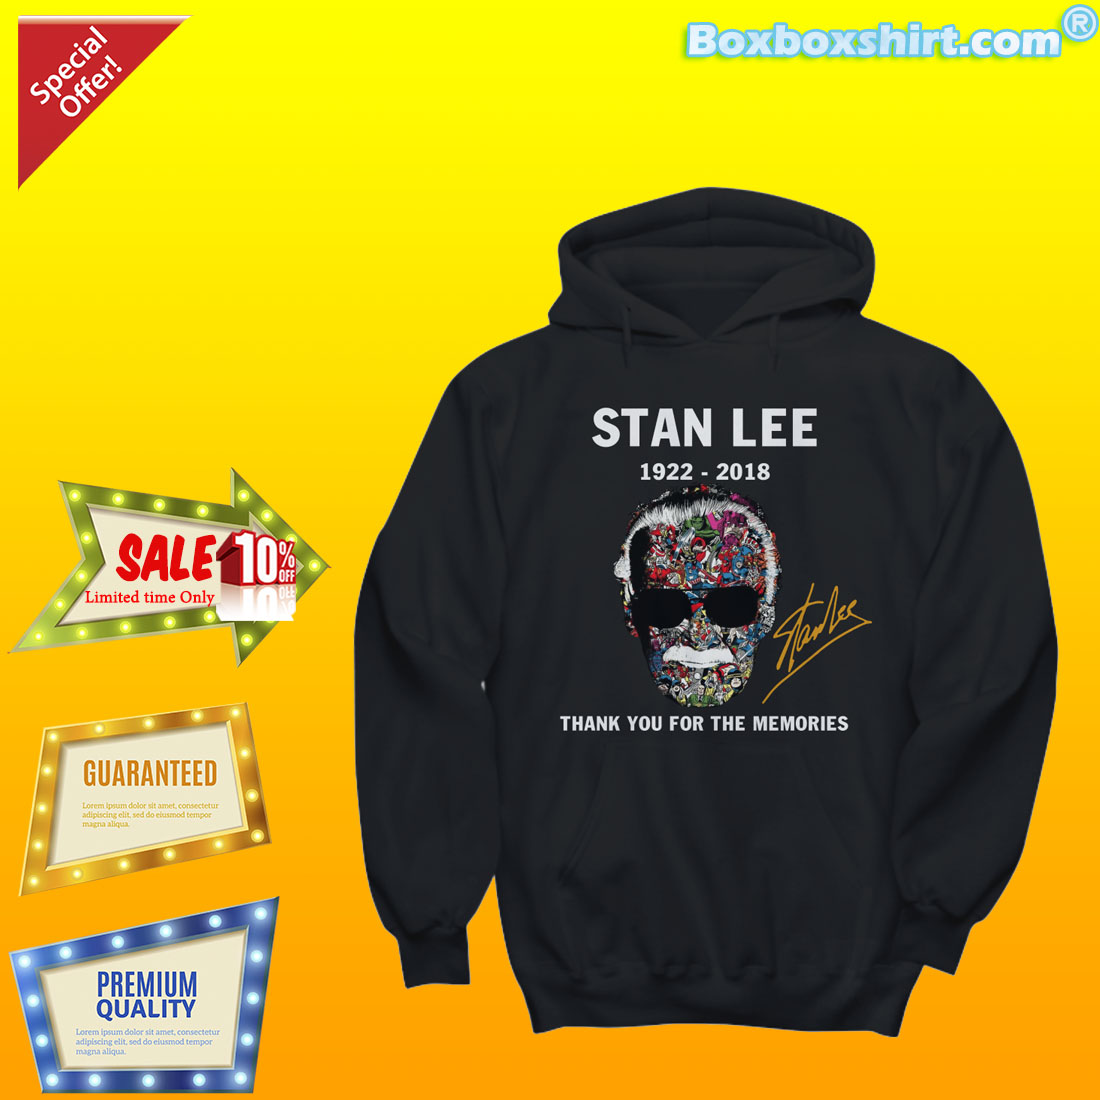 Stan Lee face t shirt